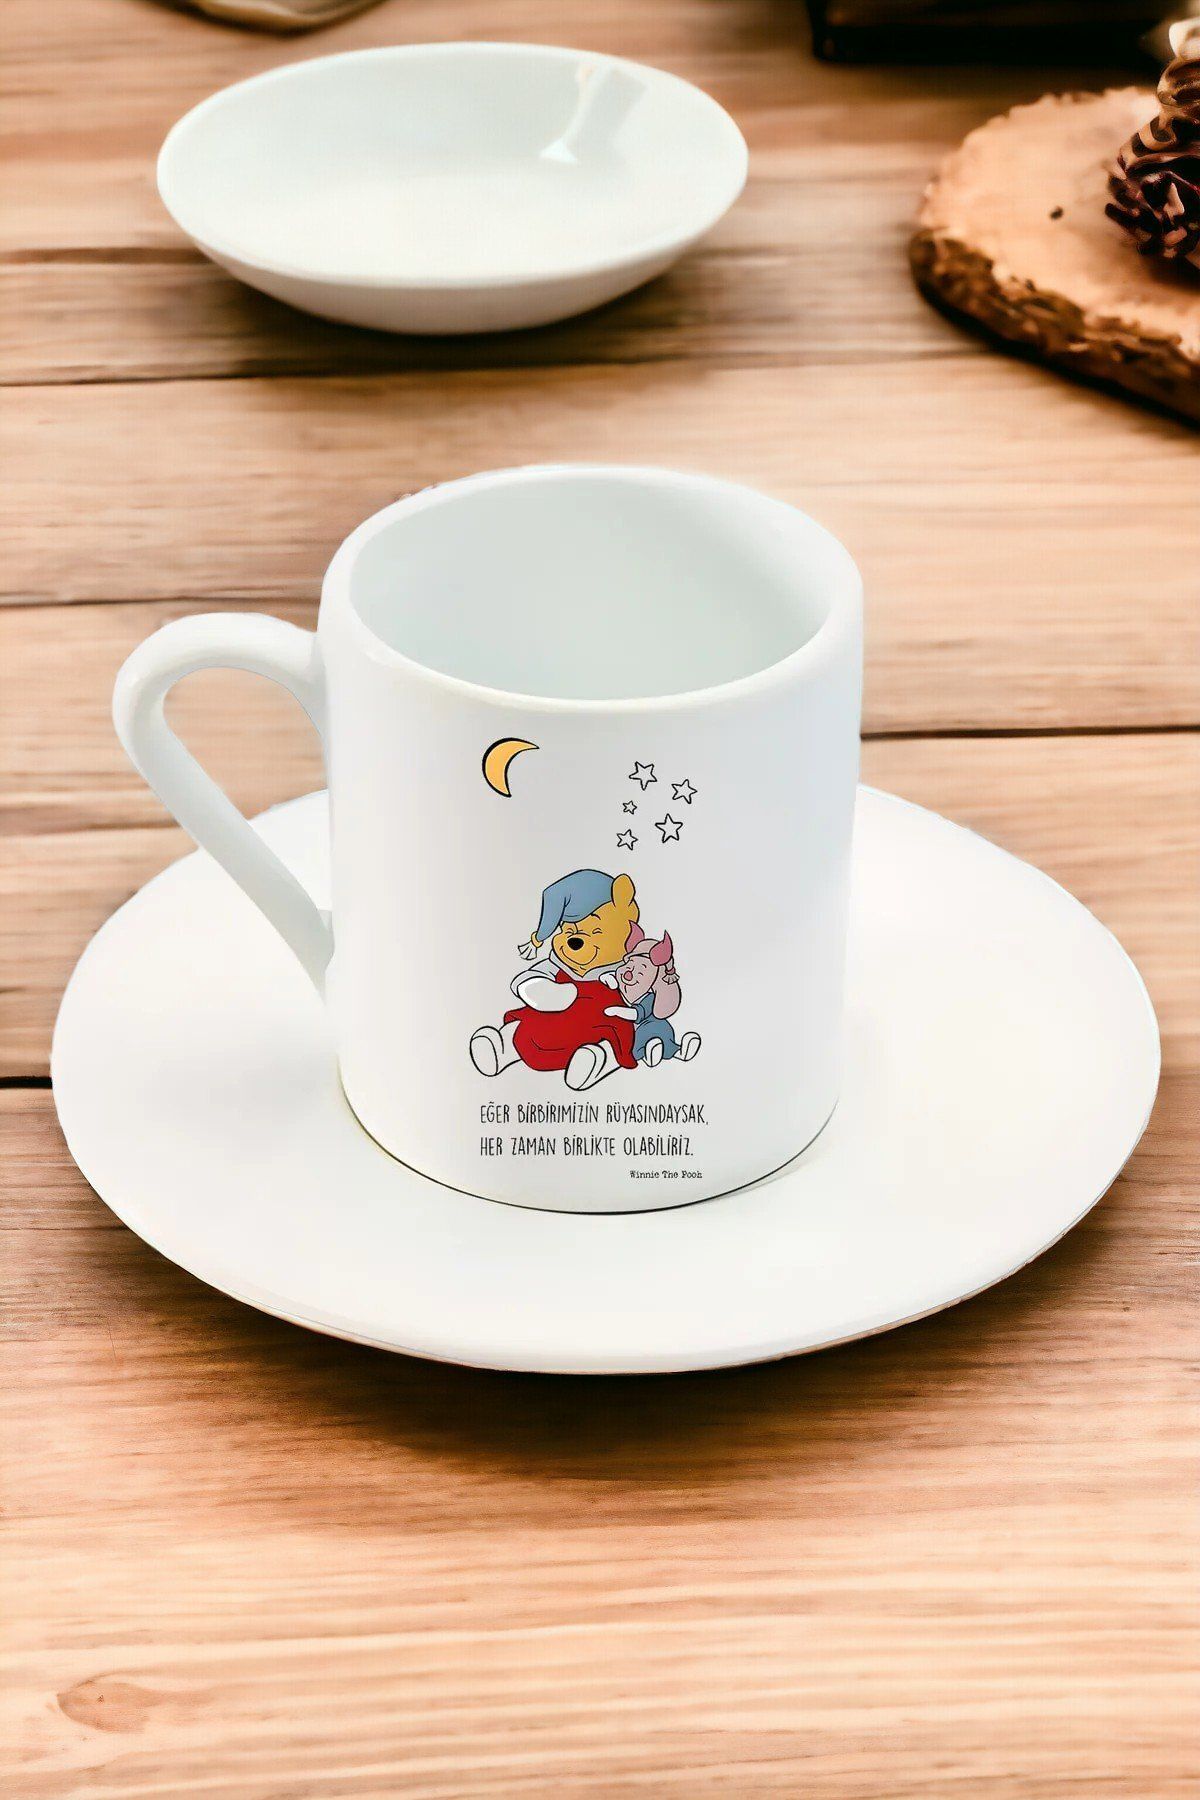 EFL 2li Türk Kahvesi Fincan Seti / Eğer Birbirimizin Rüyasındaysak Her Zaman Birlikte Olabiliriz Yazılı.